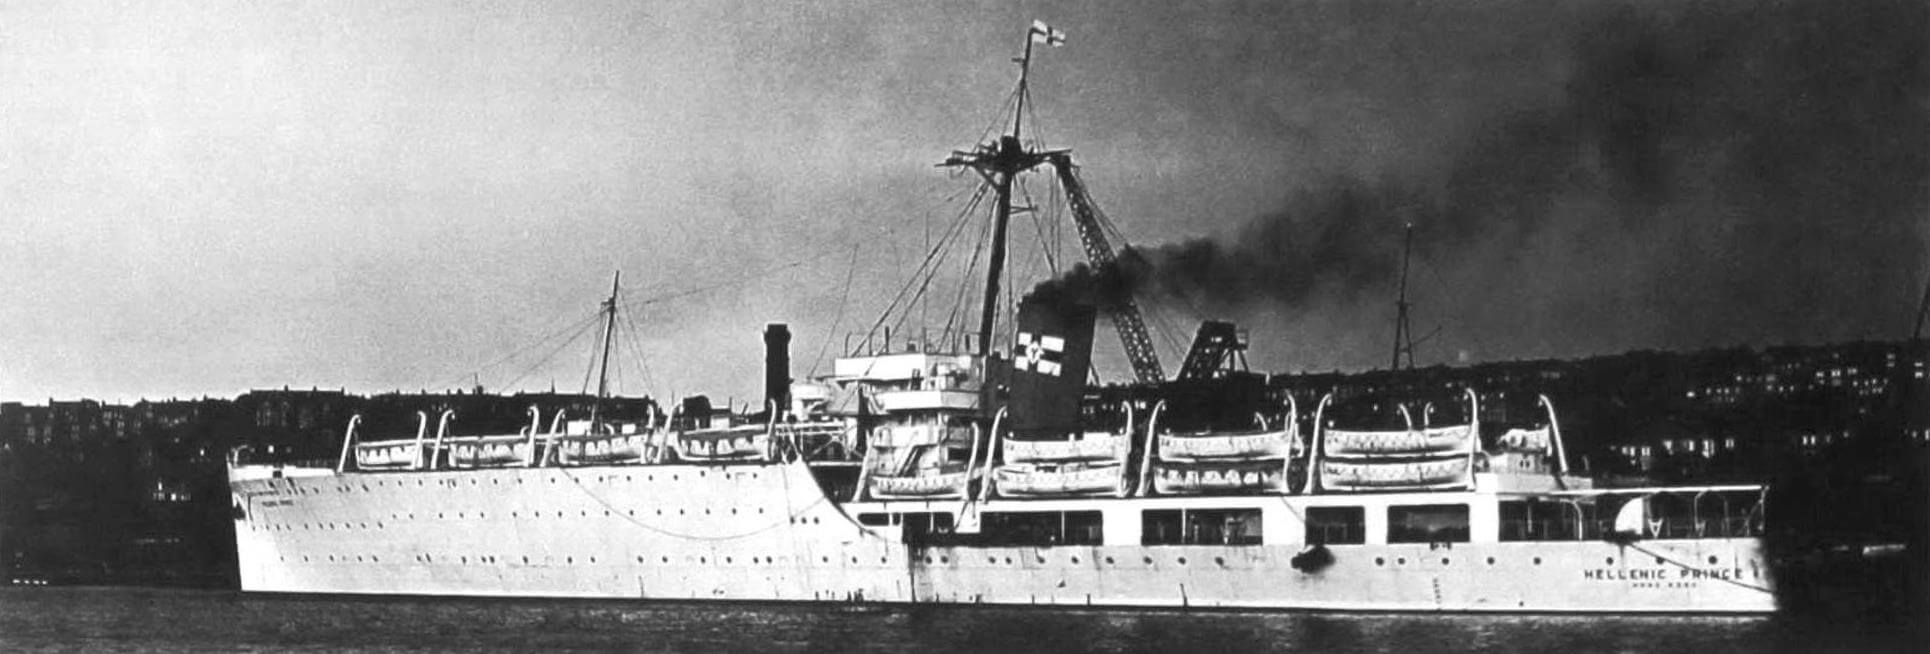 Пассажирское судно «Хелленик Принс» (бывший «Альбатрос») на верфи «Барри Докс» по завершении переоборудования, 1949 год. На корме виден порт приписки - Гонконг